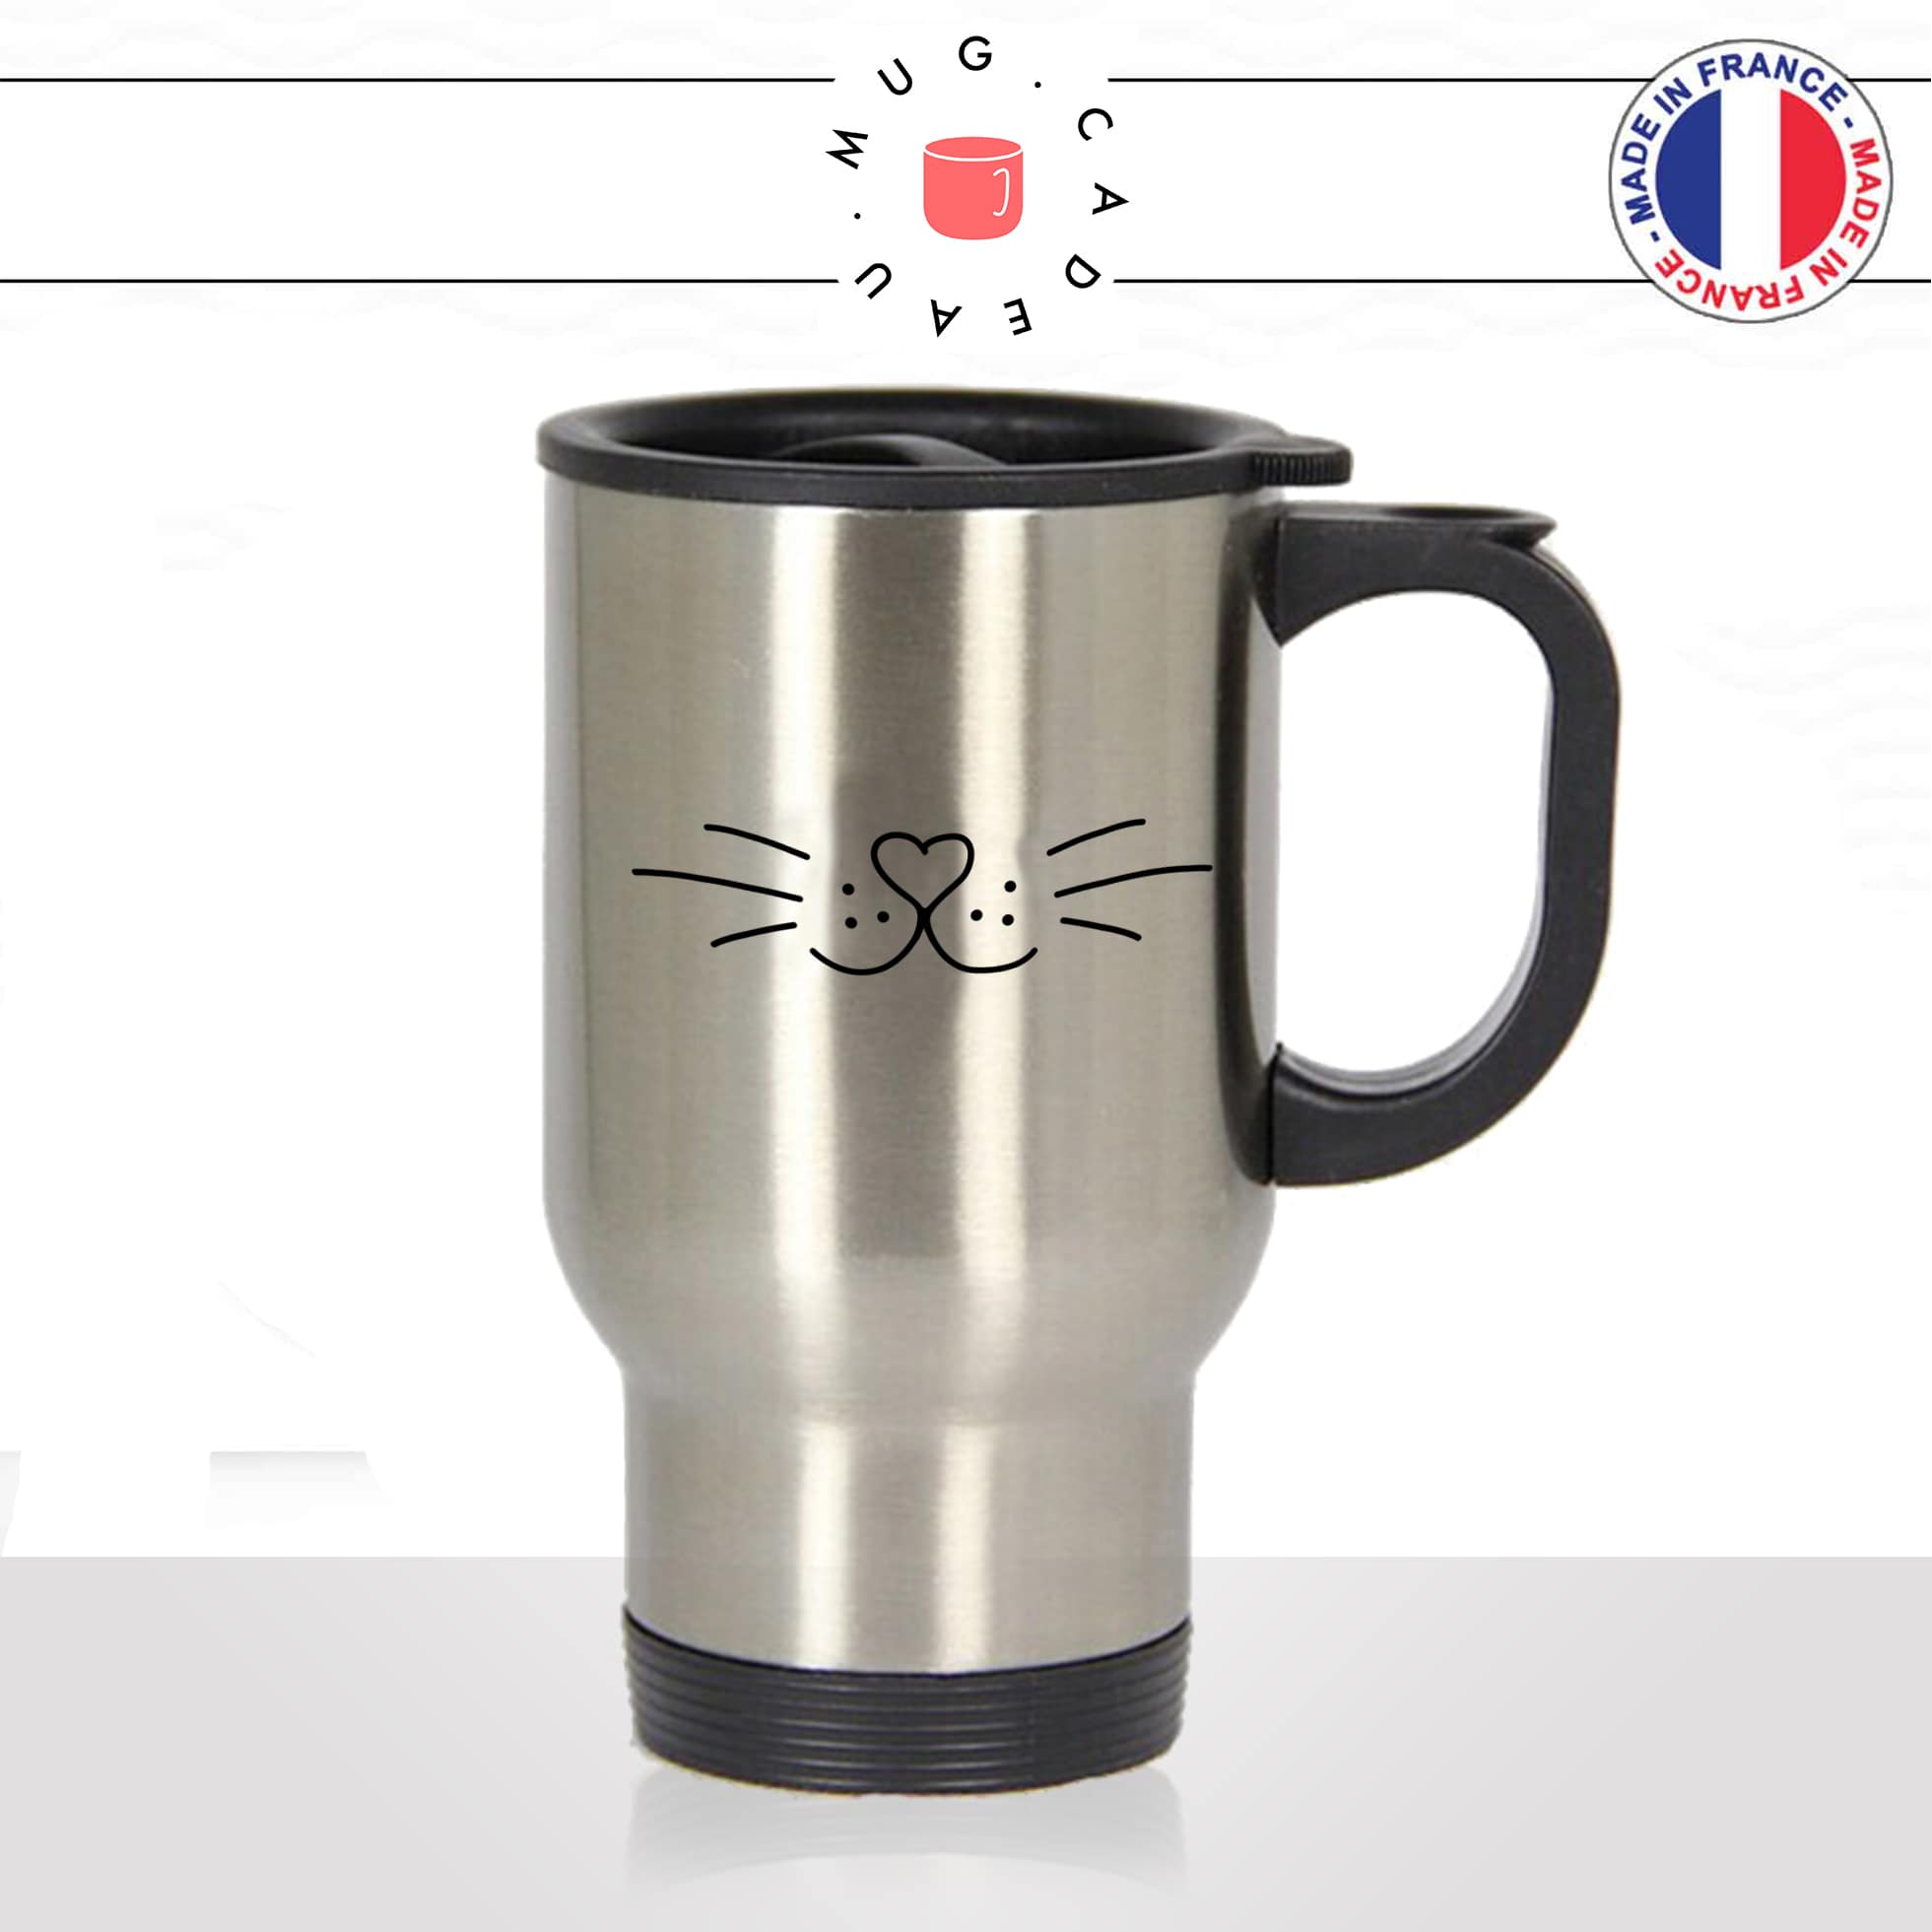 mug-tasse-thermos-de-voyage-café-thé-boisson-animal-animaux-chat-chaton-moustache-coeur-museau-mignon-idée-cadeau-original-fun-cool2-min